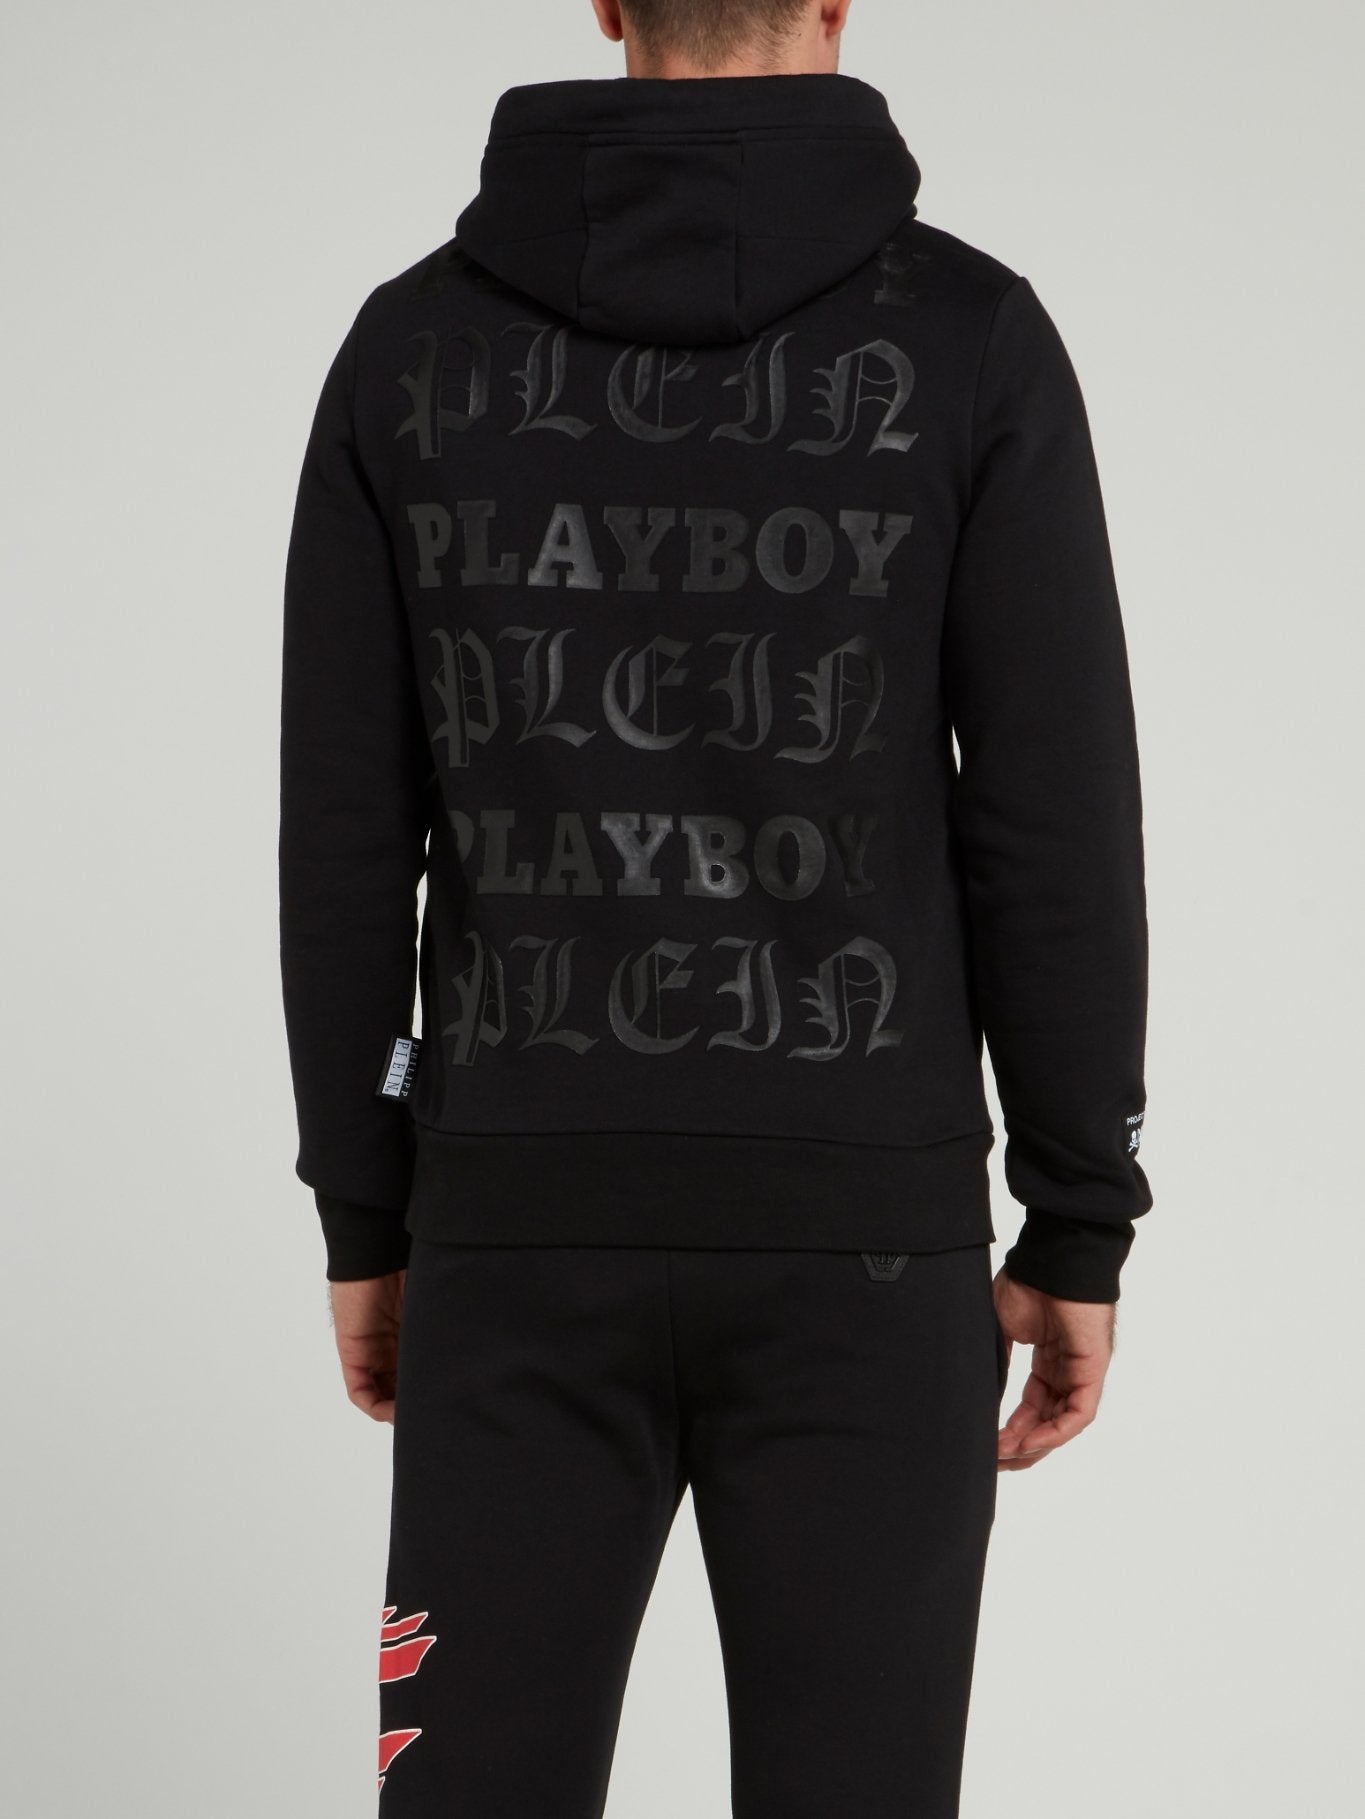 Playboy Black Drawstring Hoodie Sweatshirt